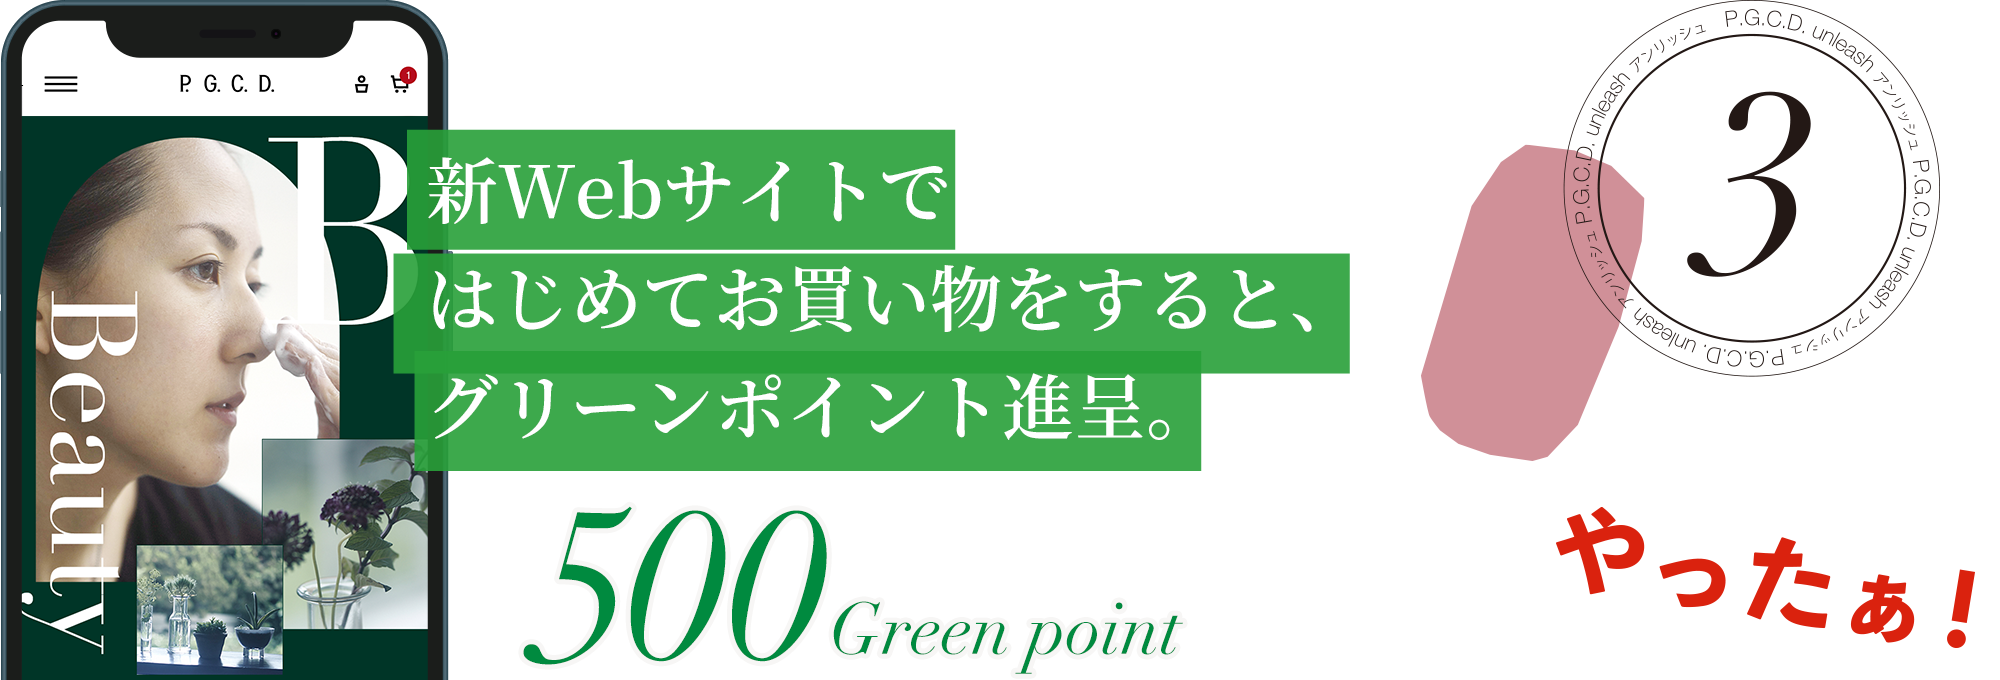 新Webサイトではじめてお買い物をすると、グリーンポイント進呈。500 Green point